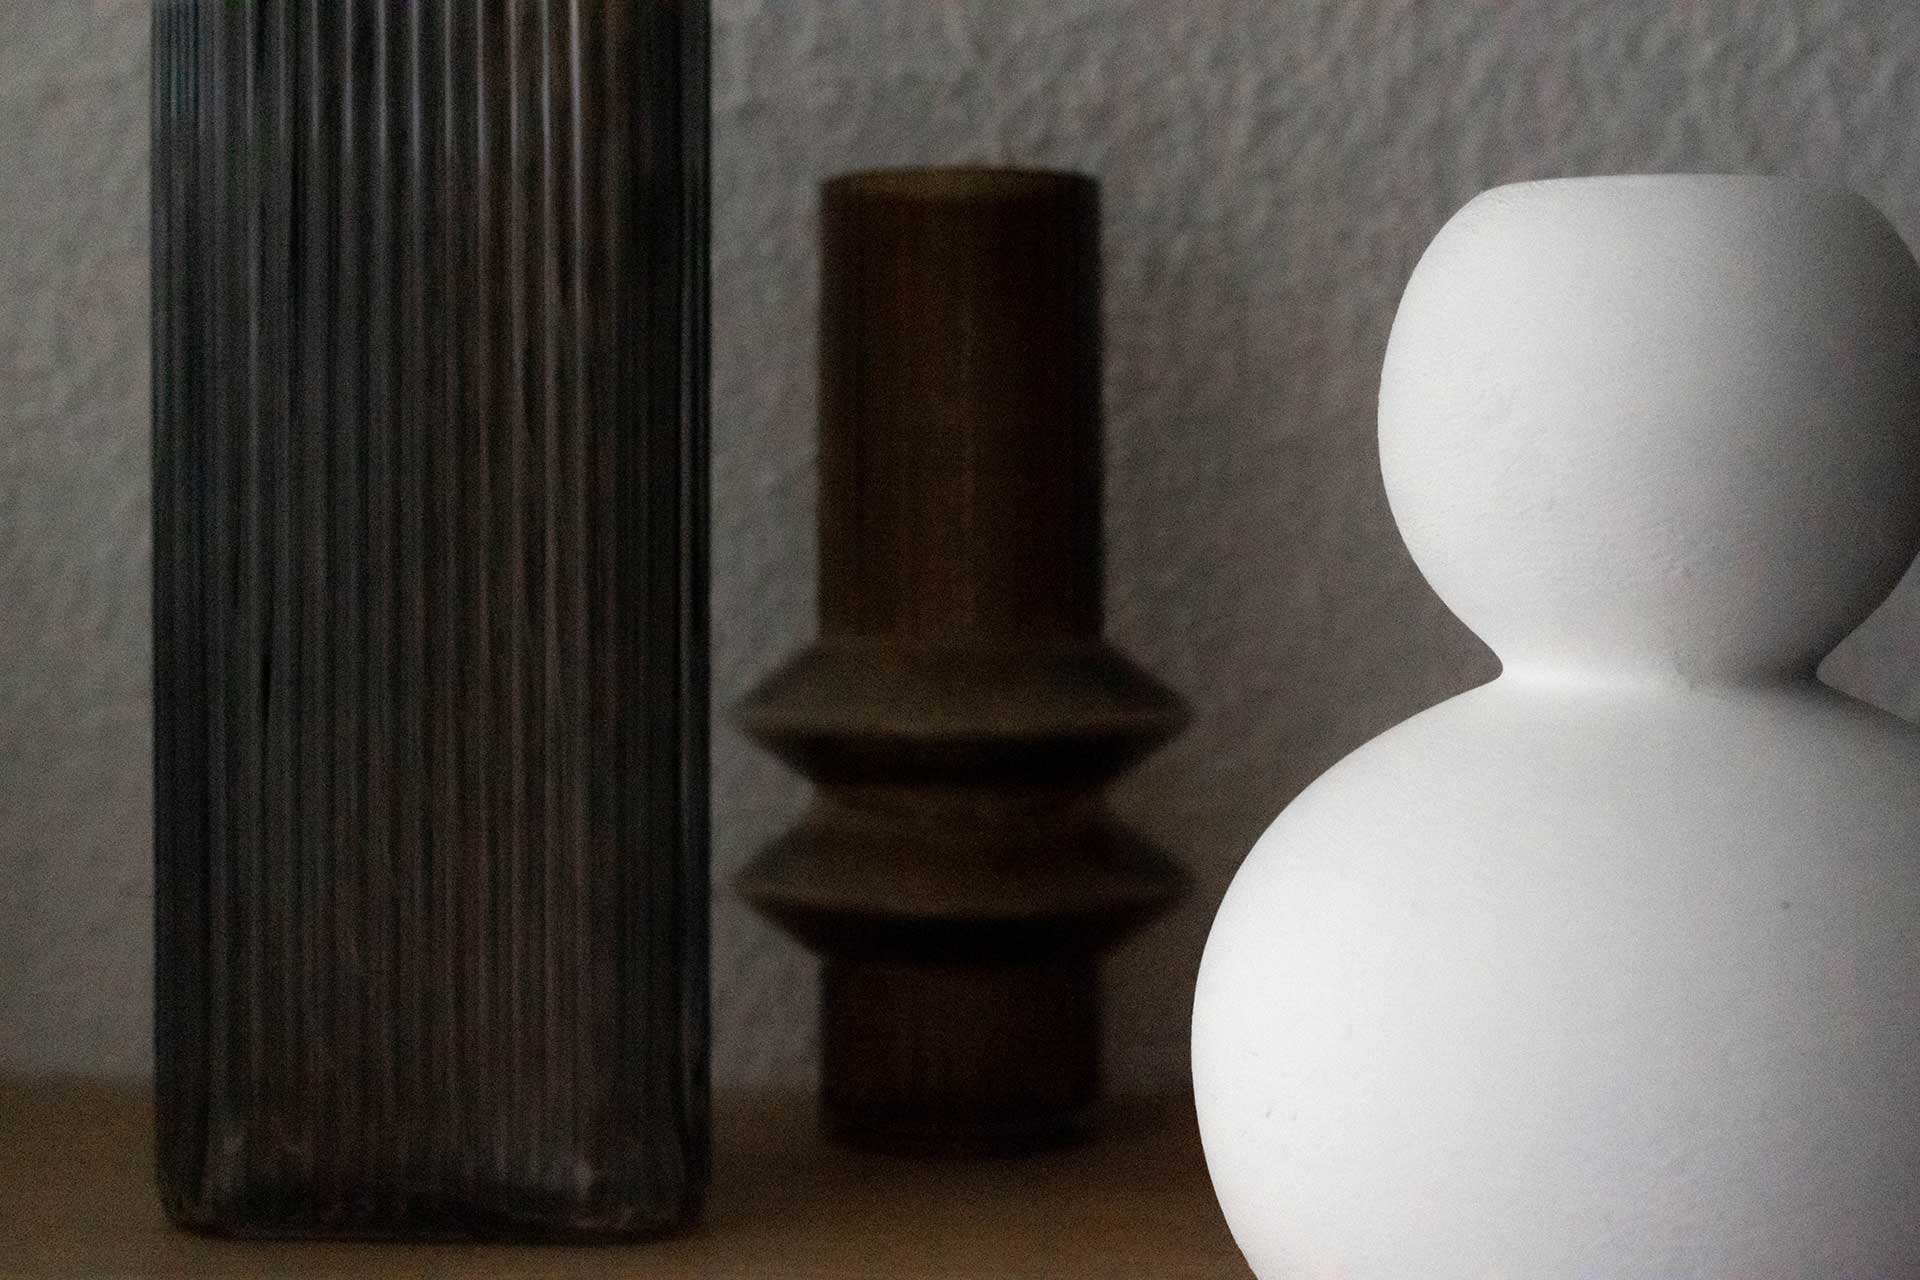 Mit diesen einfachen, aber effektiven Tipps kannst du Vasen dekorieren, um deinem Zuhause eine elegante Atmosphäre zu verleihen. Es gibt viele Möglichkeiten, mit denen du noch heute beginnen kannst!